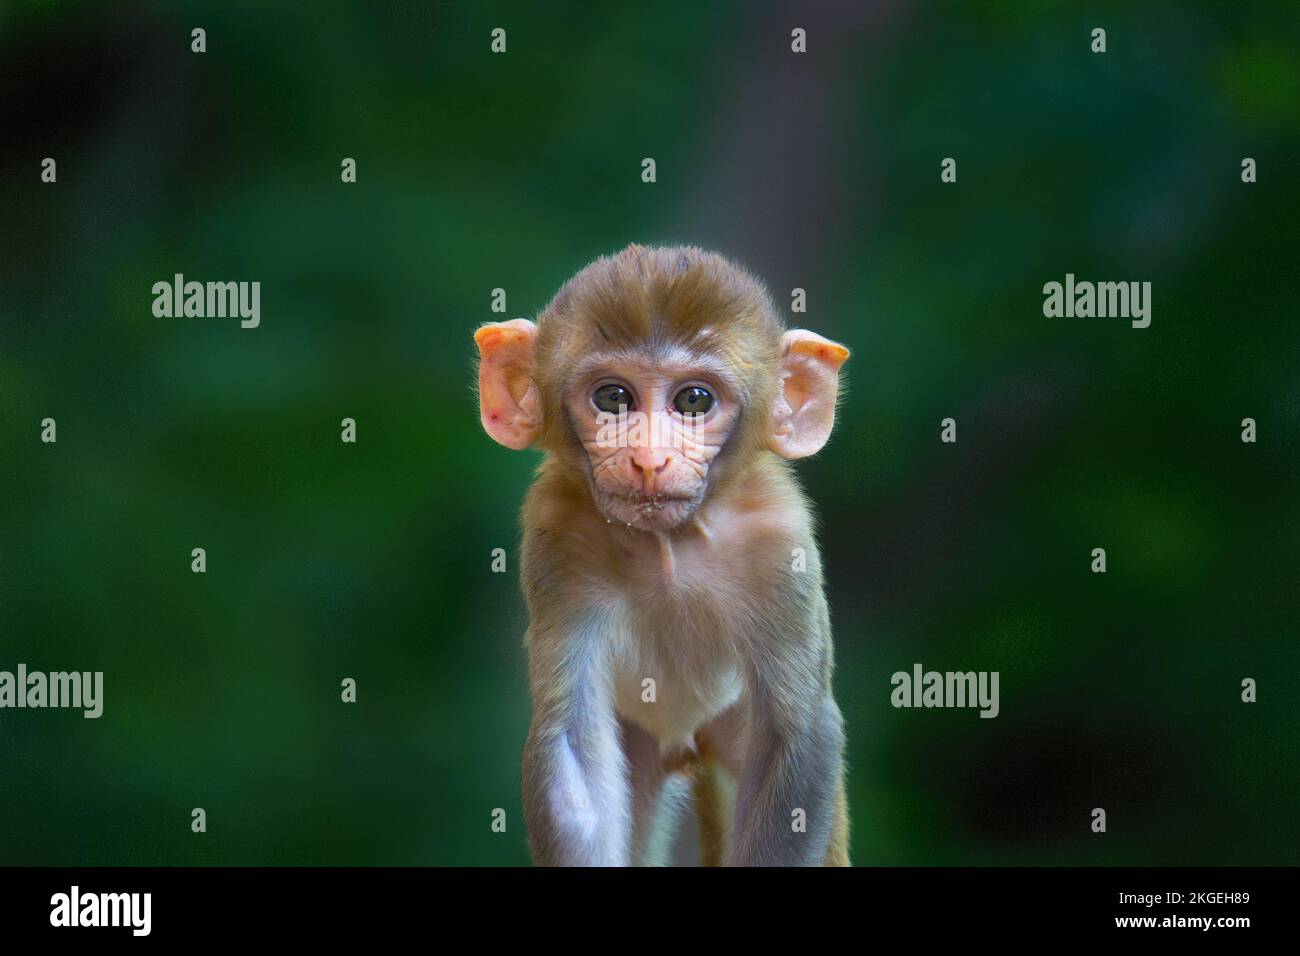 Der niedliche und niedliche Rhesus-Affe, der in die Kamera schaut, hat einen grünen und verschwommenen Hintergrund Stockfoto